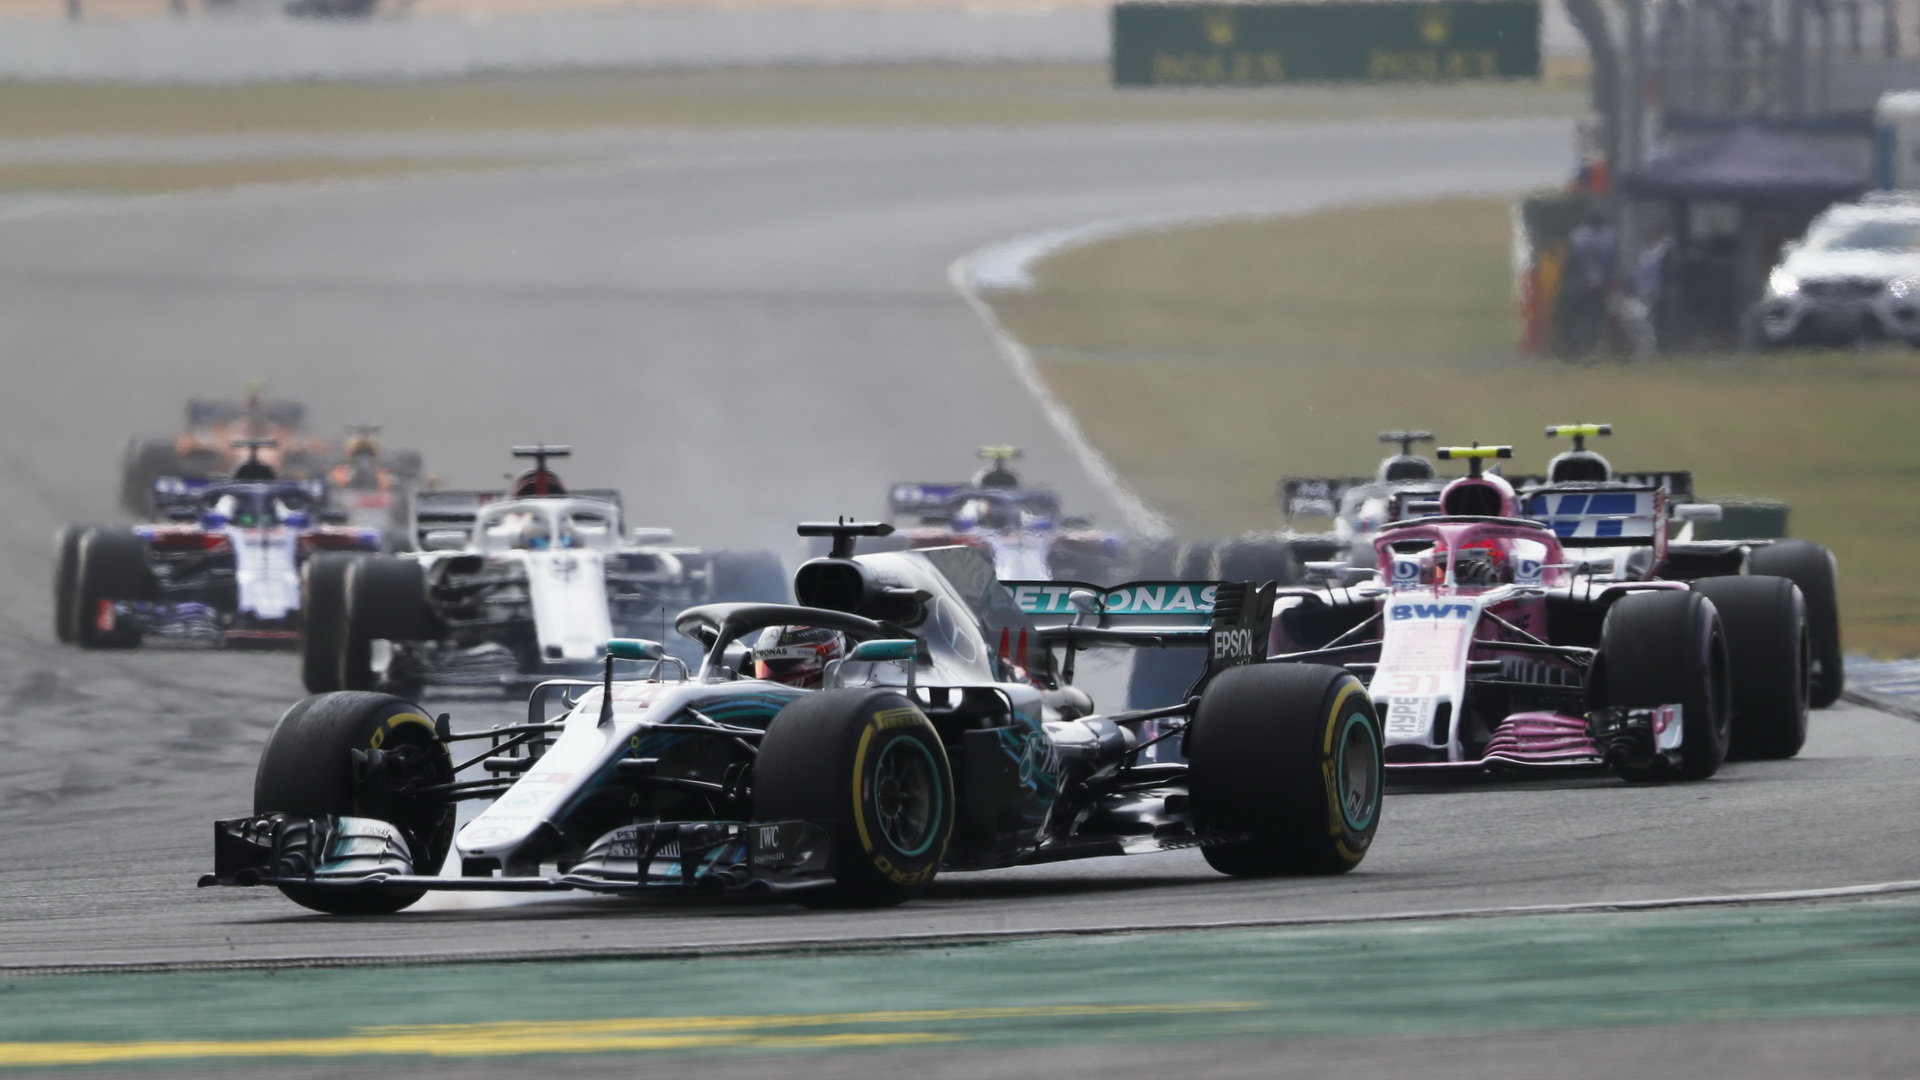 Lewis Hamilton v závodě v Německu